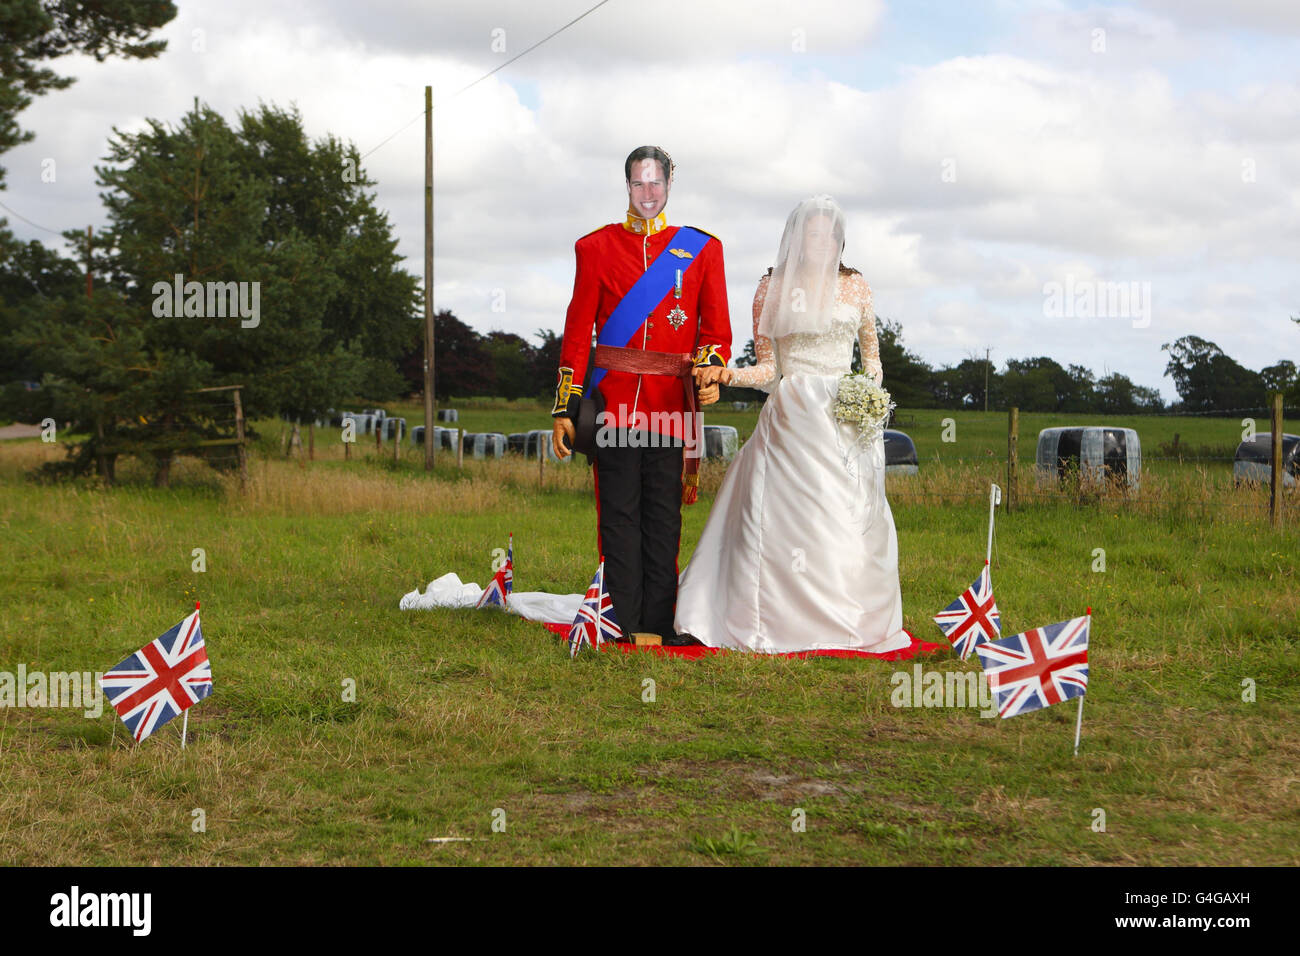 Le mariage du prince William à Katherine Middleton, aujourd'hui duc et duchesse de Cambridge, est recréé dans un champ du festival de Bisterne Scarecrow, près de Ringwood, dans le Hampshire. Banque D'Images